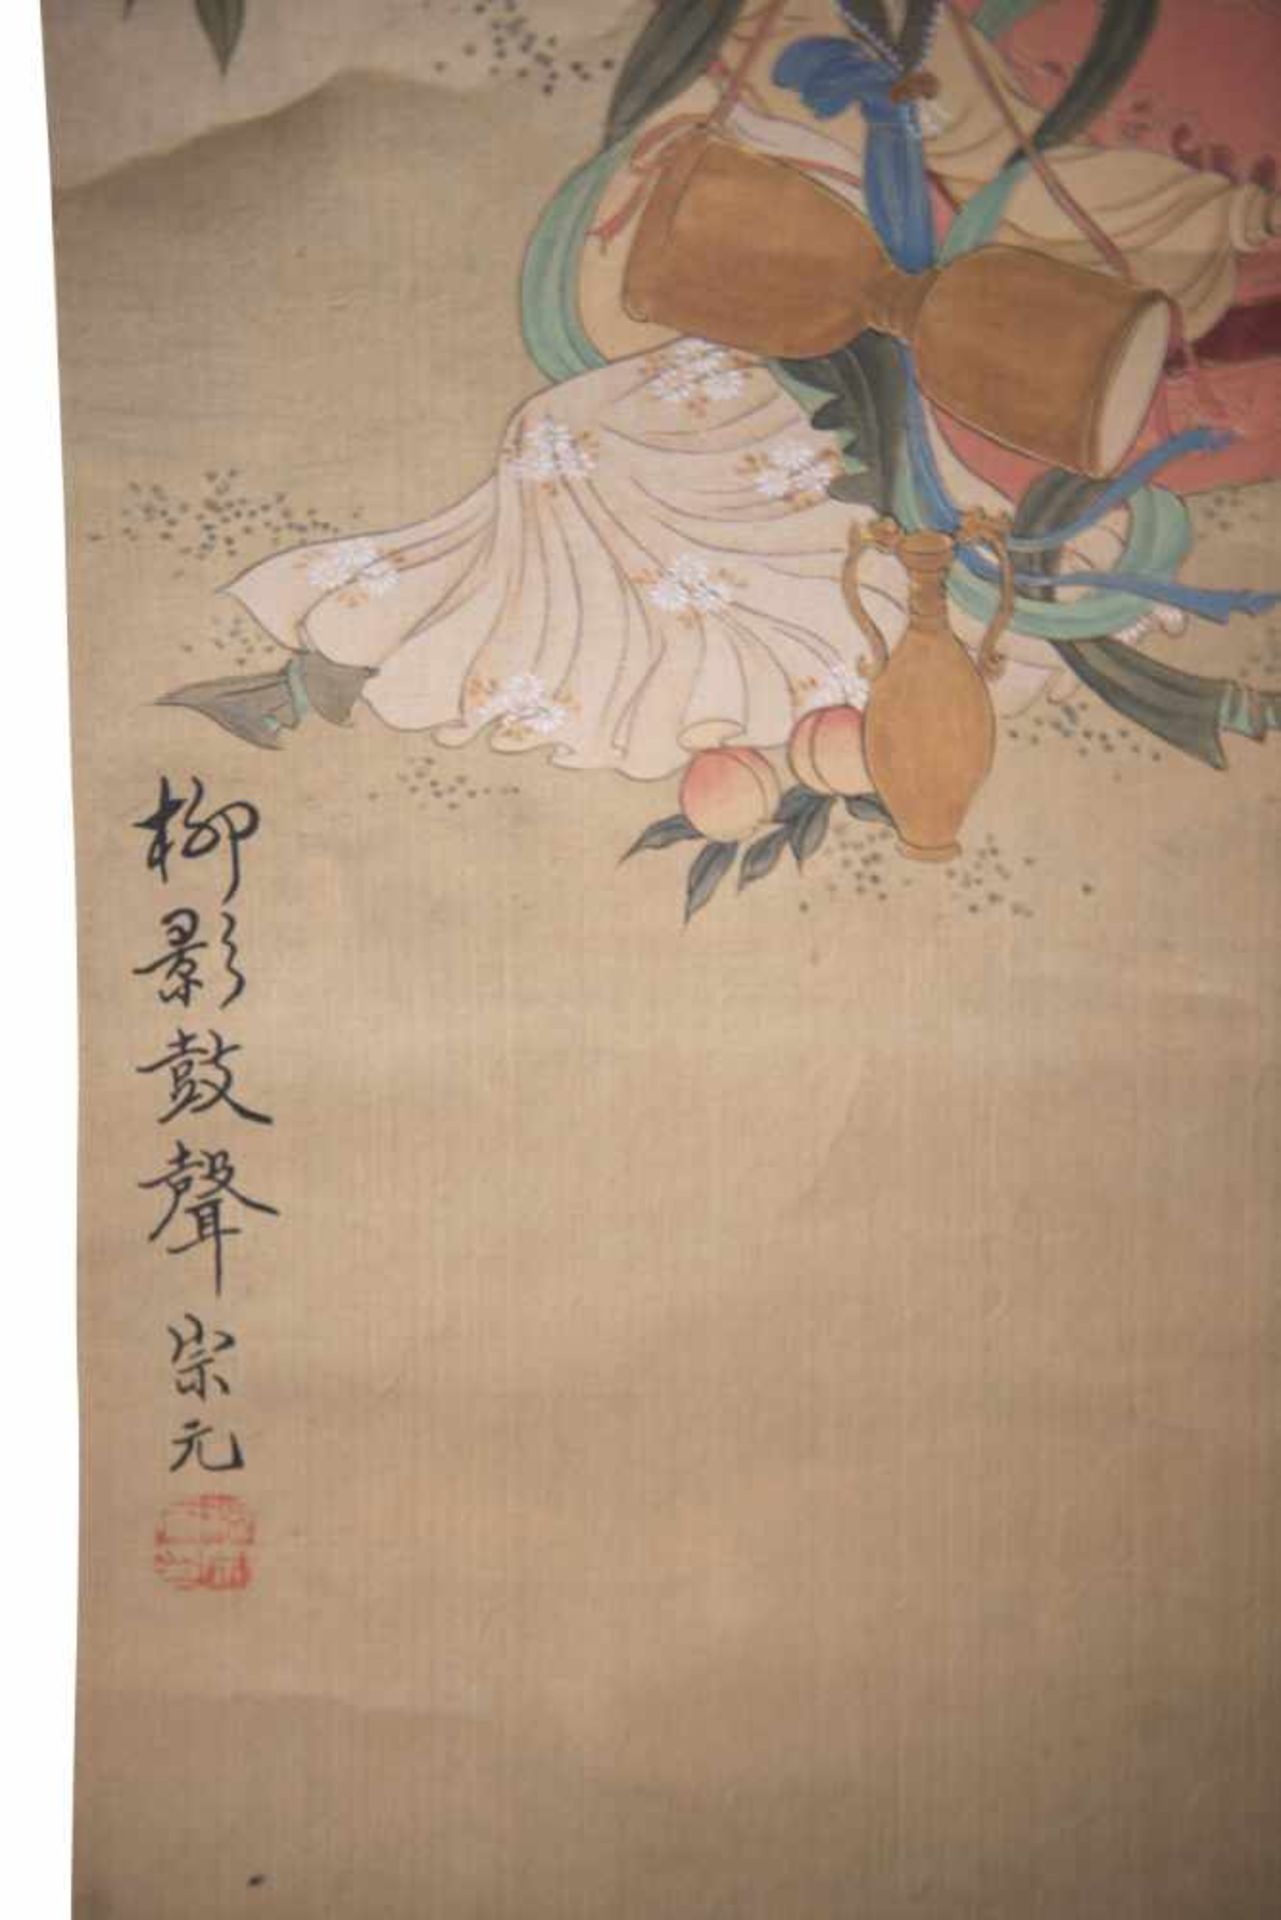 Japanische Hängerolle Tusche und Farben auf Seide. Diese Hängerolle zeigt Frauen bei einem Picknick. - Bild 3 aus 3